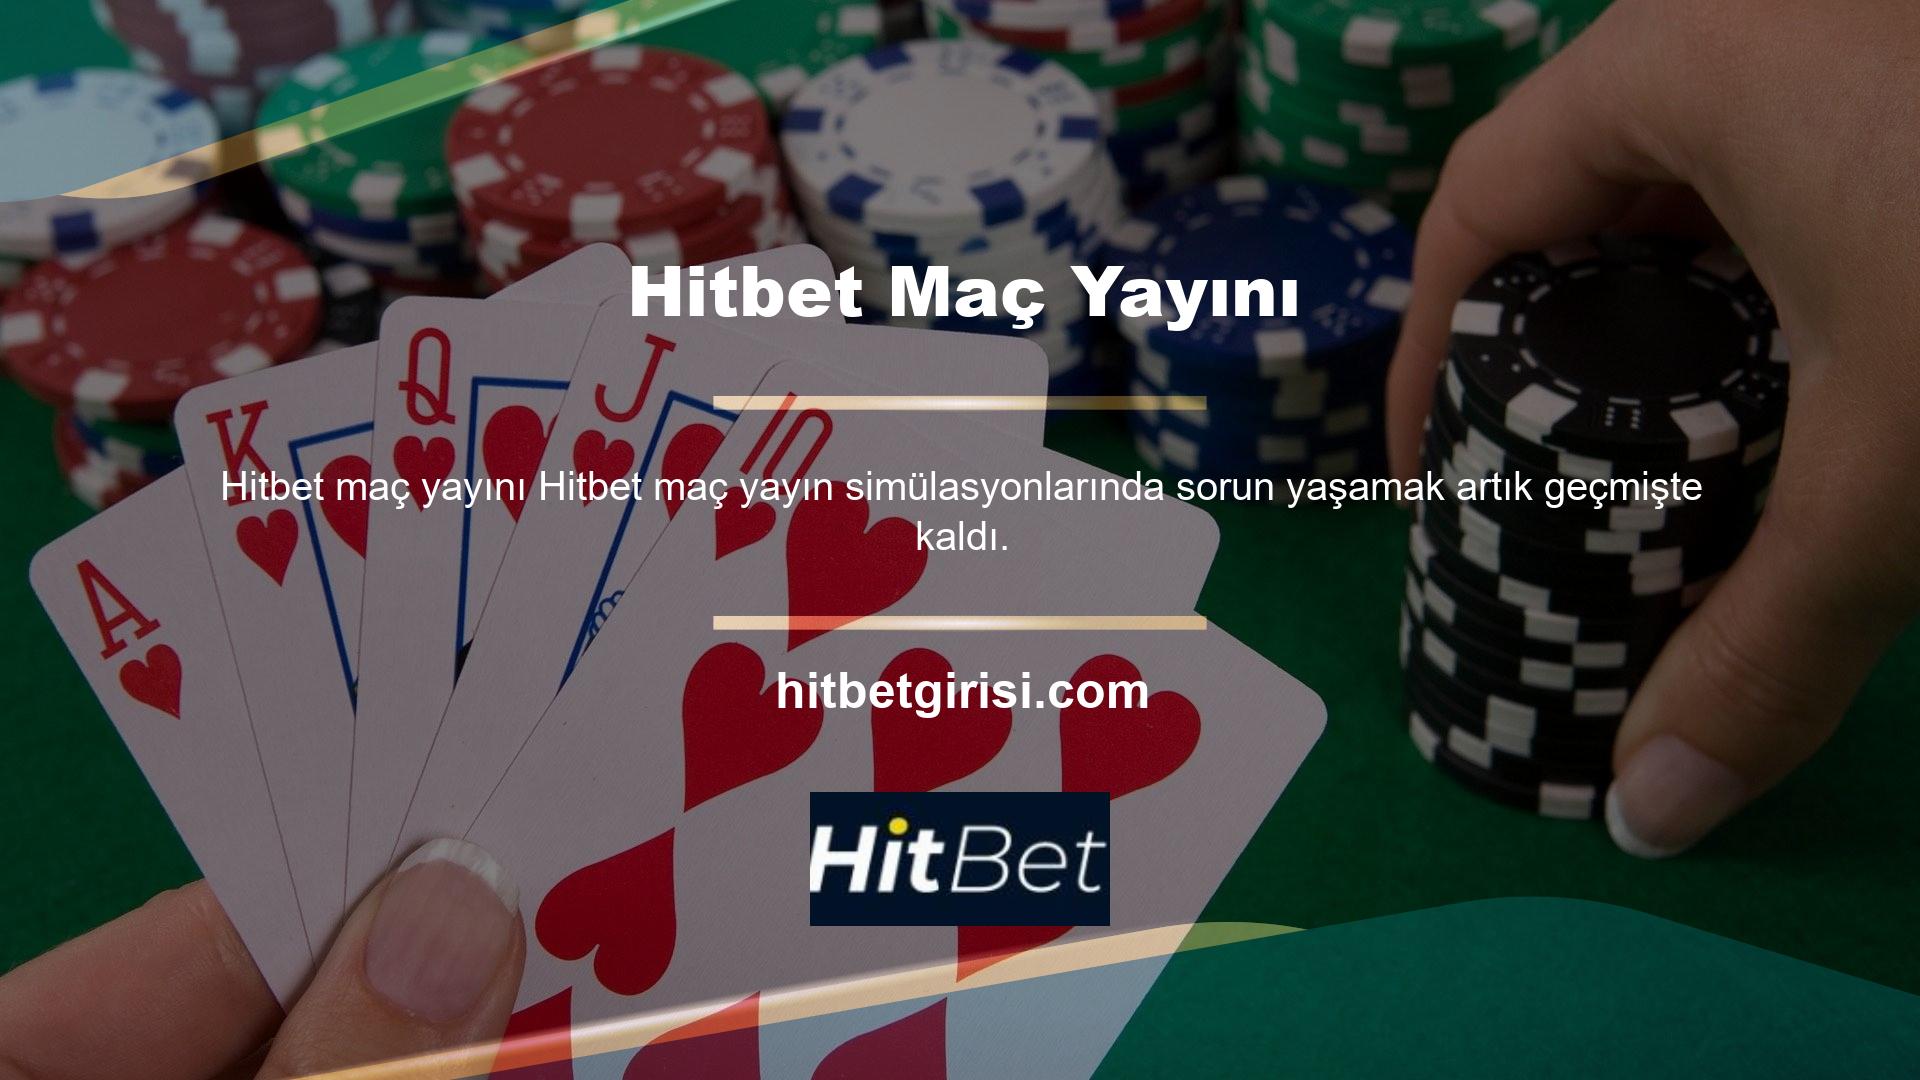 Şirket, geleneksel olmayan fırsatlara sahip kullanıcılar için yüksek gelir elde etmek amacıyla Hitbet adlı bir maç yayın hizmeti başlattı